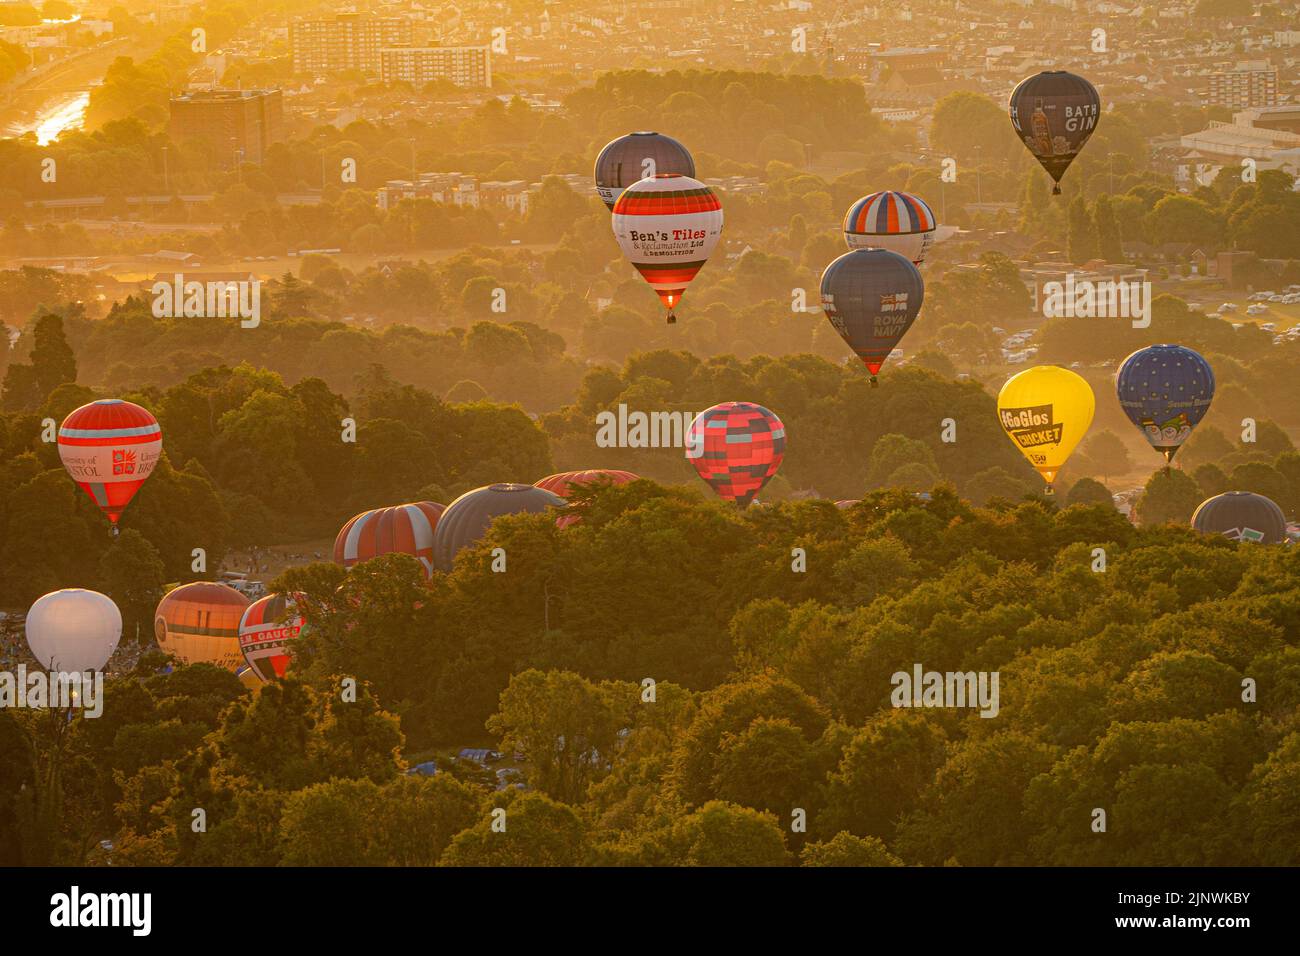 Le mongolfiere prendono il via durante la salita di massa della Bristol International Balloon Fiesta 2022. Data immagine: Domenica 14 agosto 2022. Foto Stock